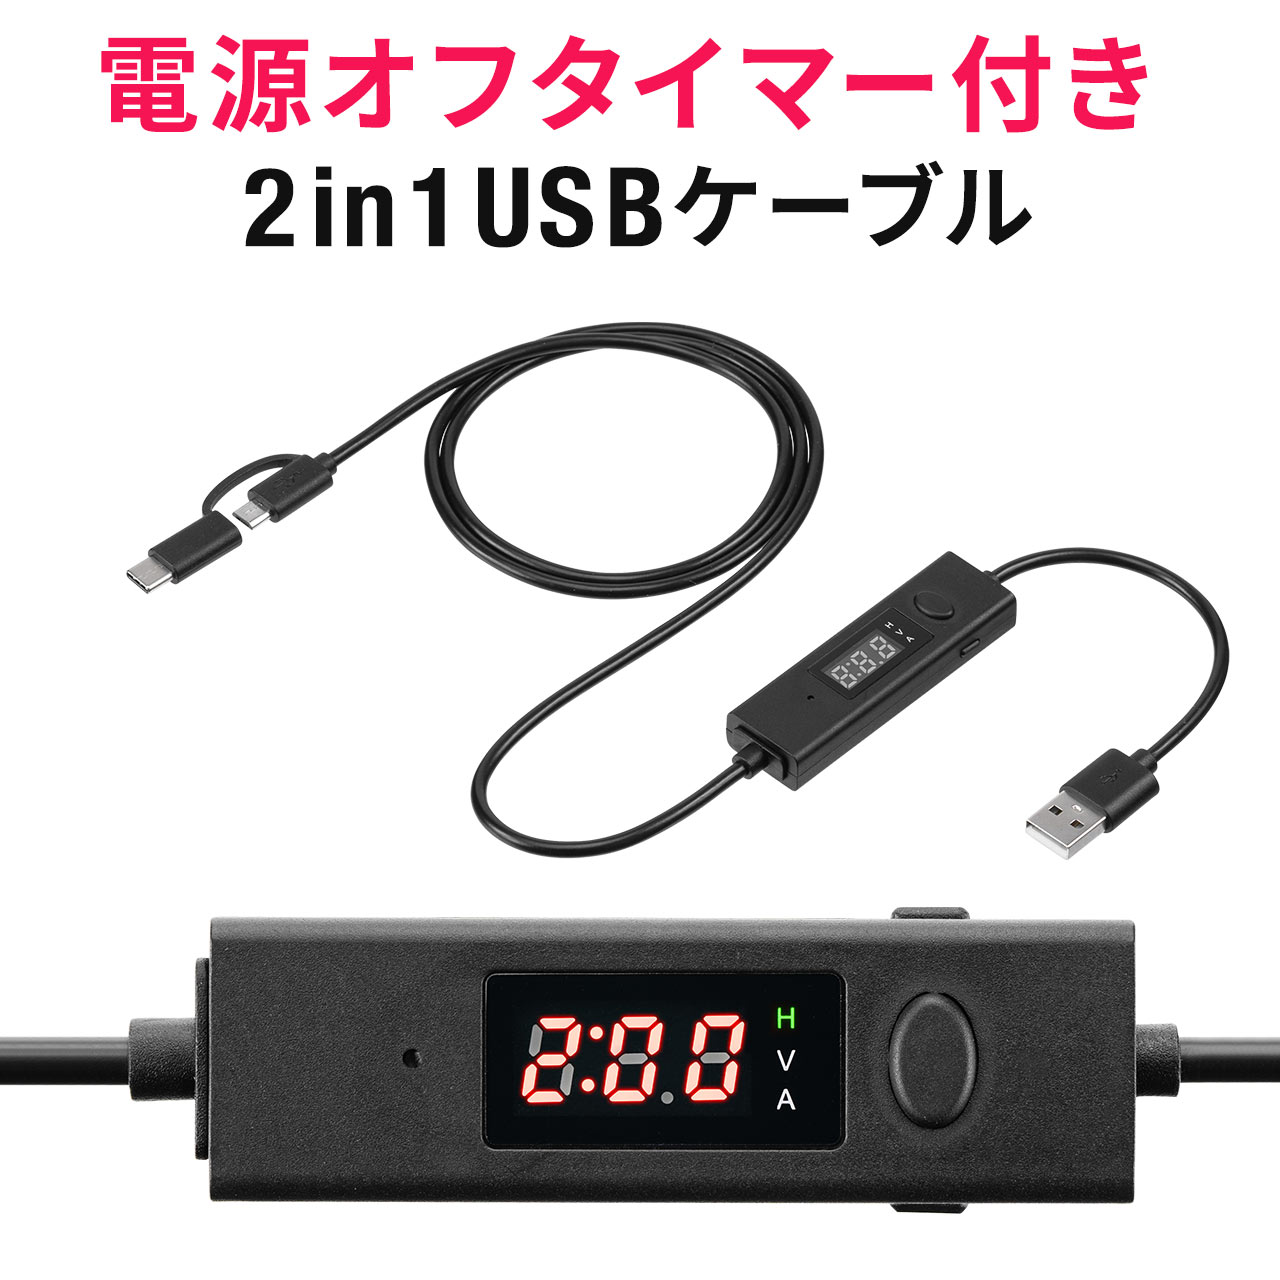  ݌Ɍ  USB^C}[P[u 2in1 USB2.0 d Type-C microUSB [d f[^] 3AΉ ubN